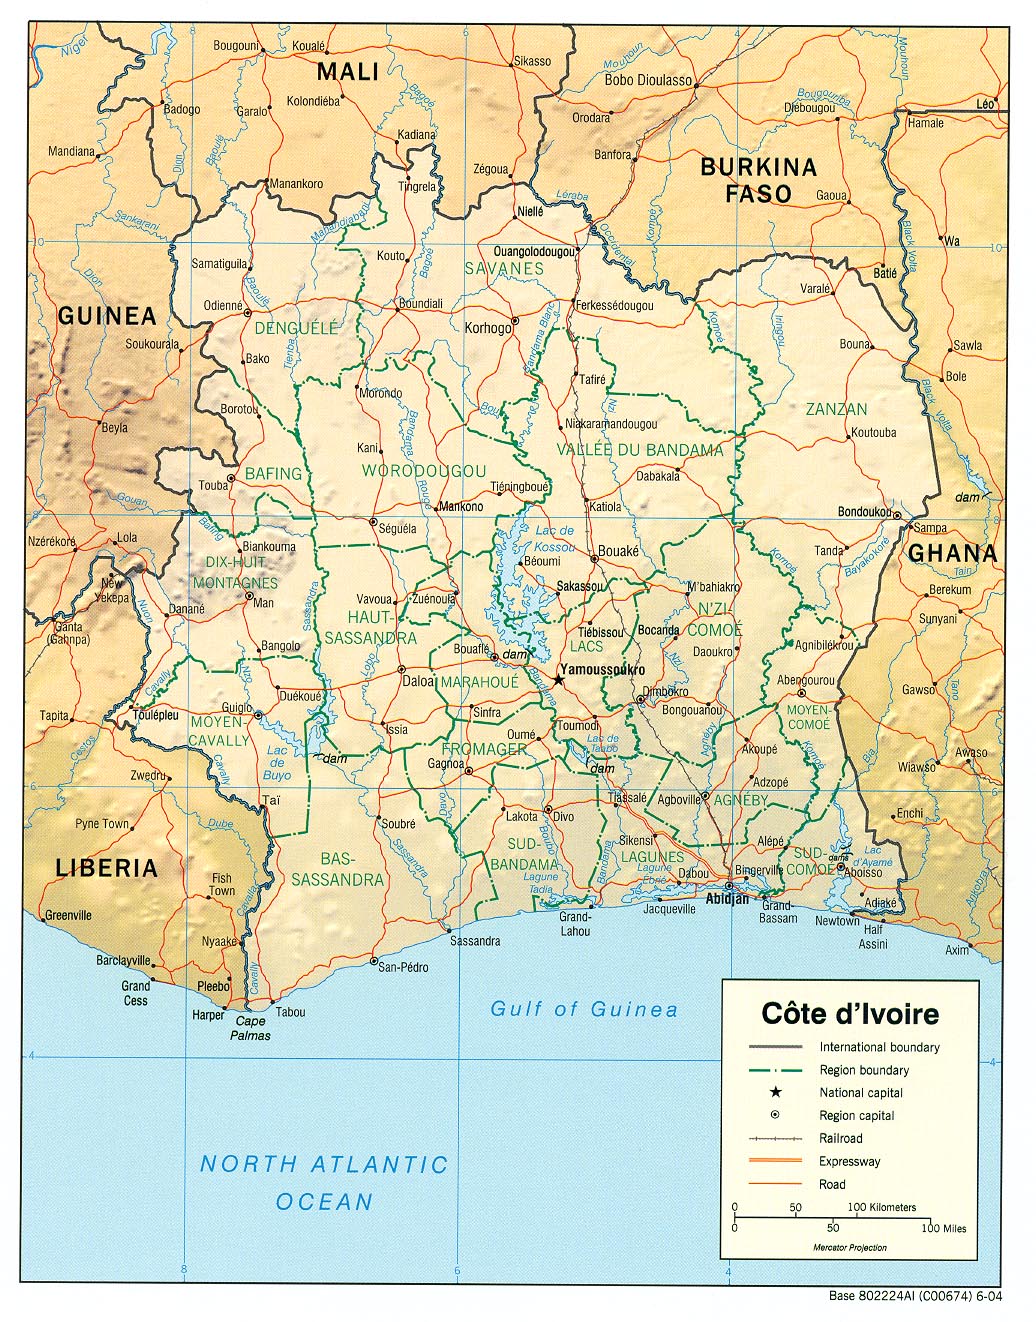 Mapa de Relieve Sombreado de Côte d'Ivoire